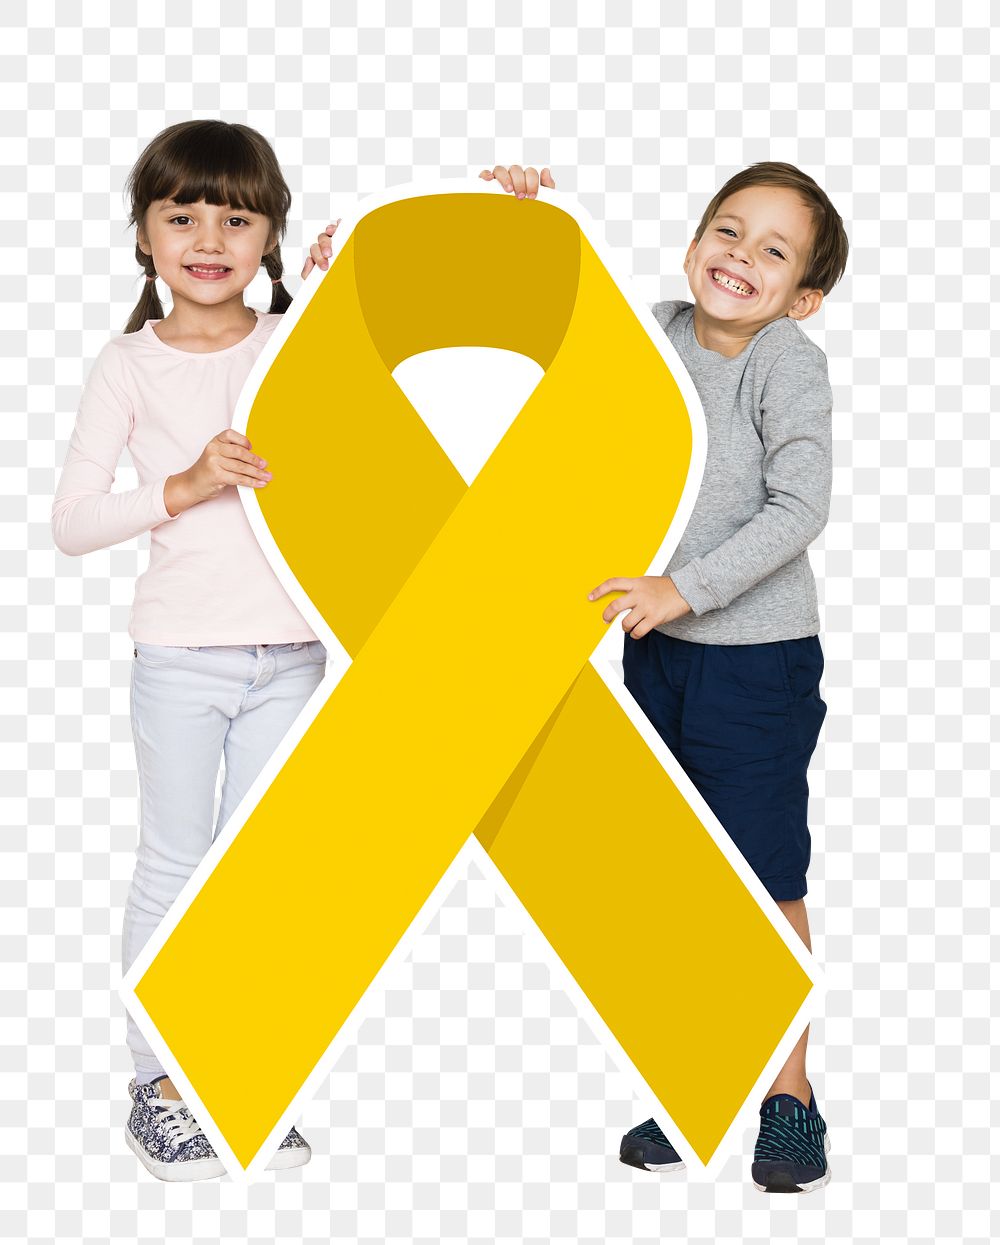 Childhood cancer awareness png, transparent background